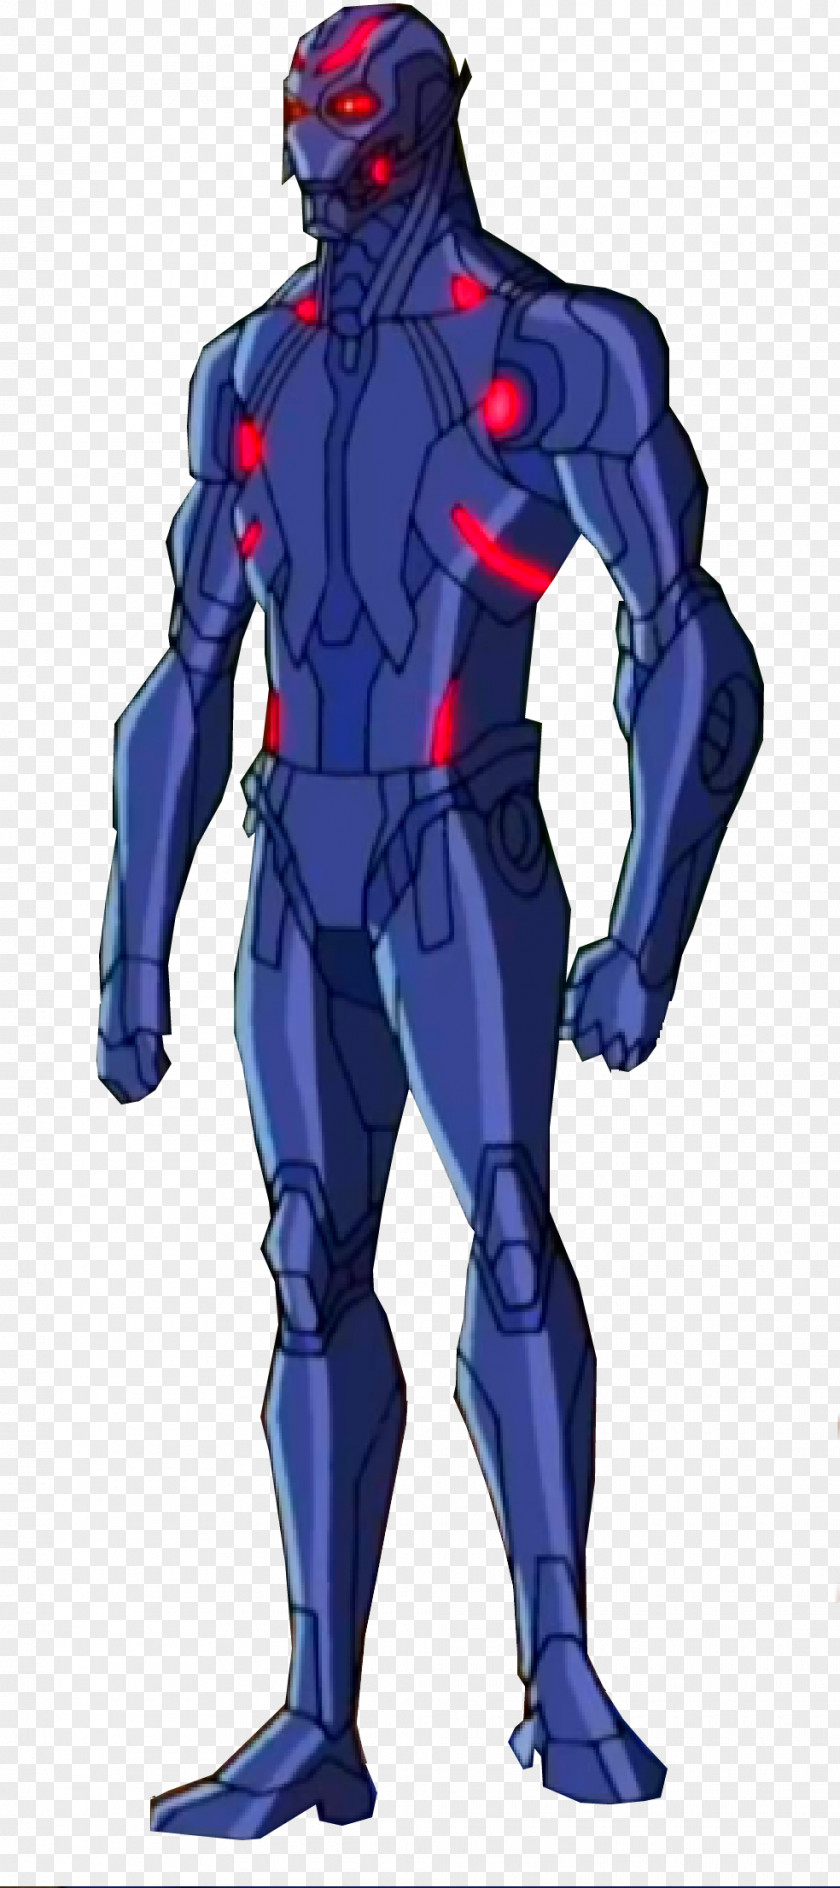 Ultron Iron Man Black Panther Superhero Rendering PNG